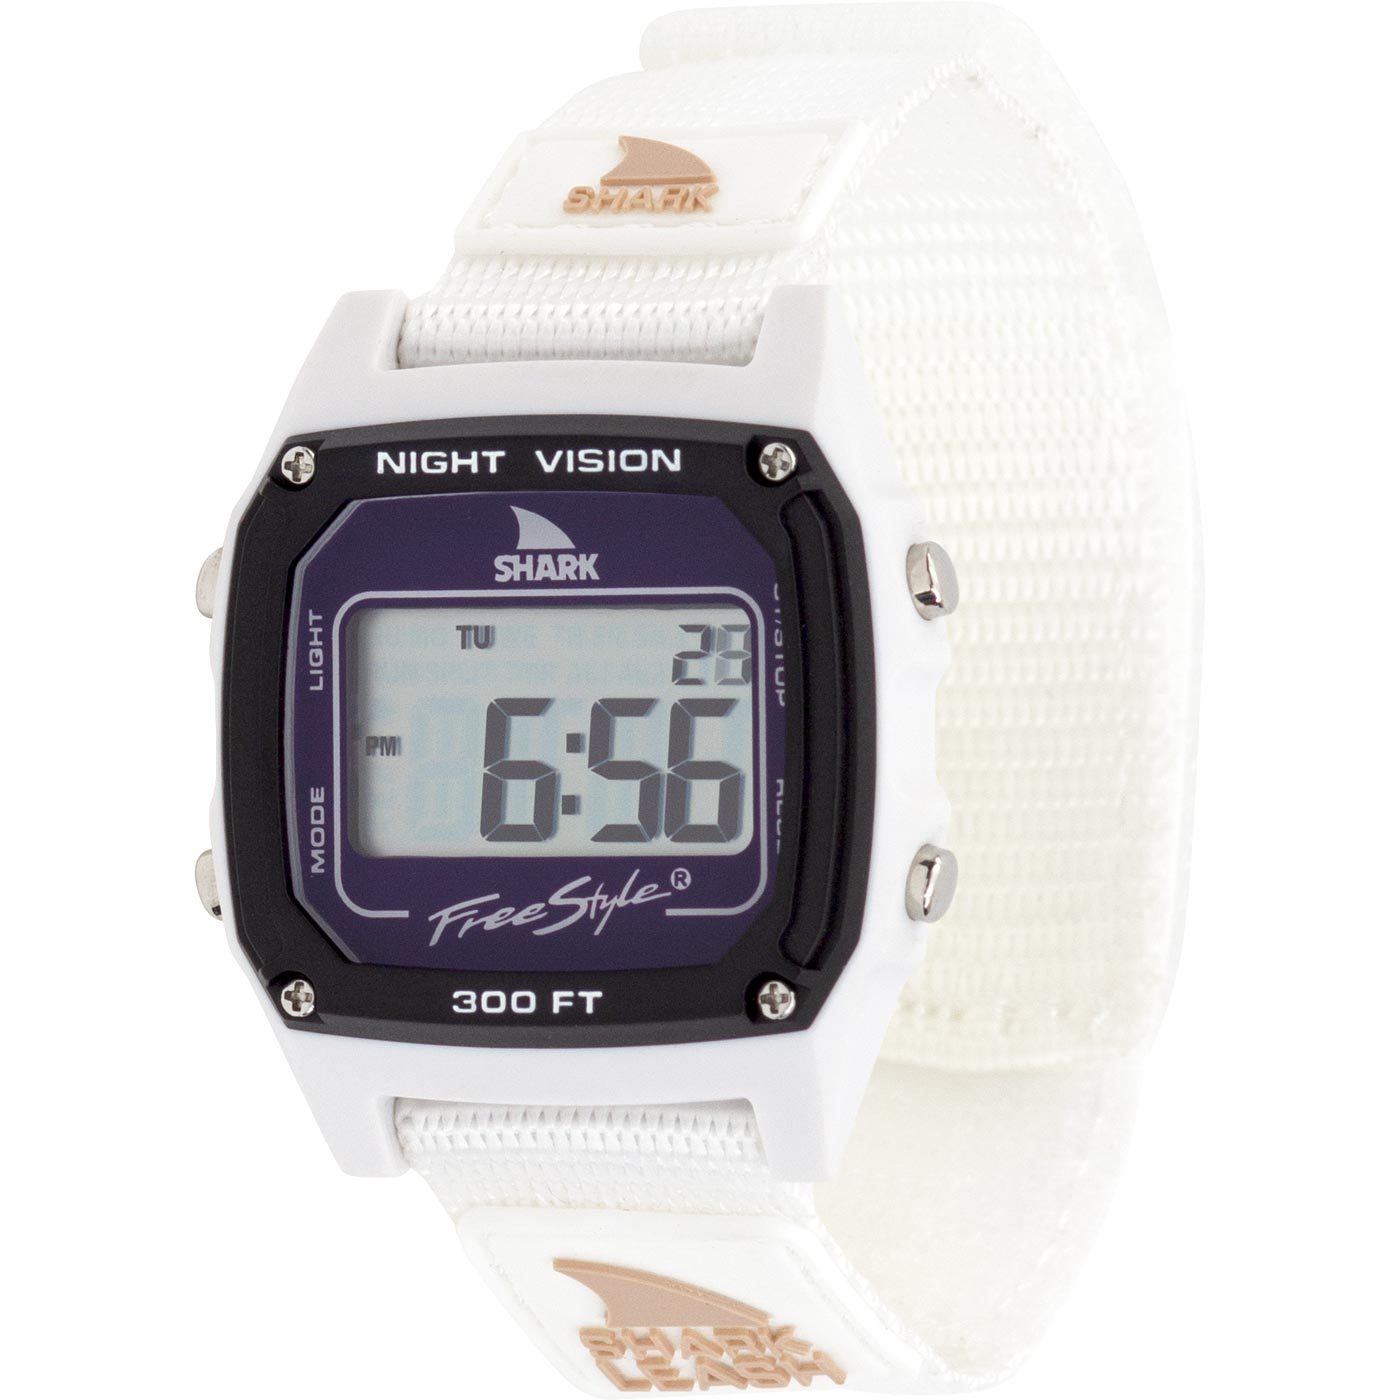 Shark s1 watch. Shark Freestyle часы 101061 а126-11. Shark Leash часы. Shark Freestyle. Tiger Shark Freestyle watch.